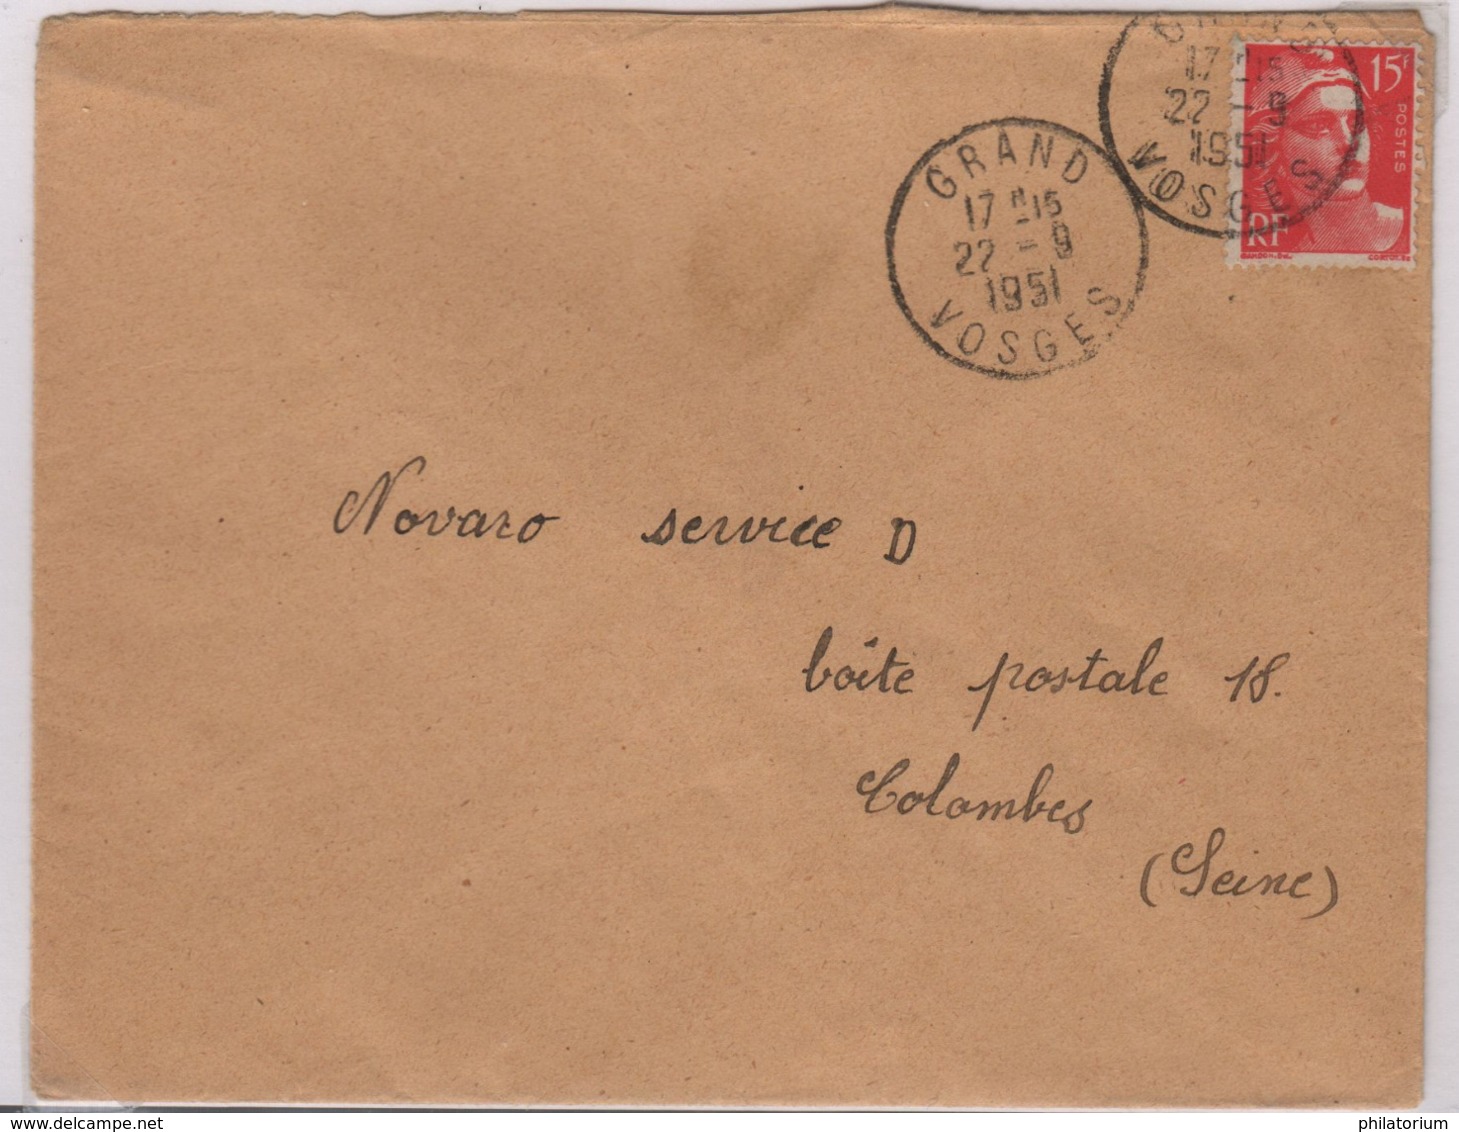 GRAND (Vosges) 22 Septembre 1951 Sur Gandon 15f - Cachets Manuels